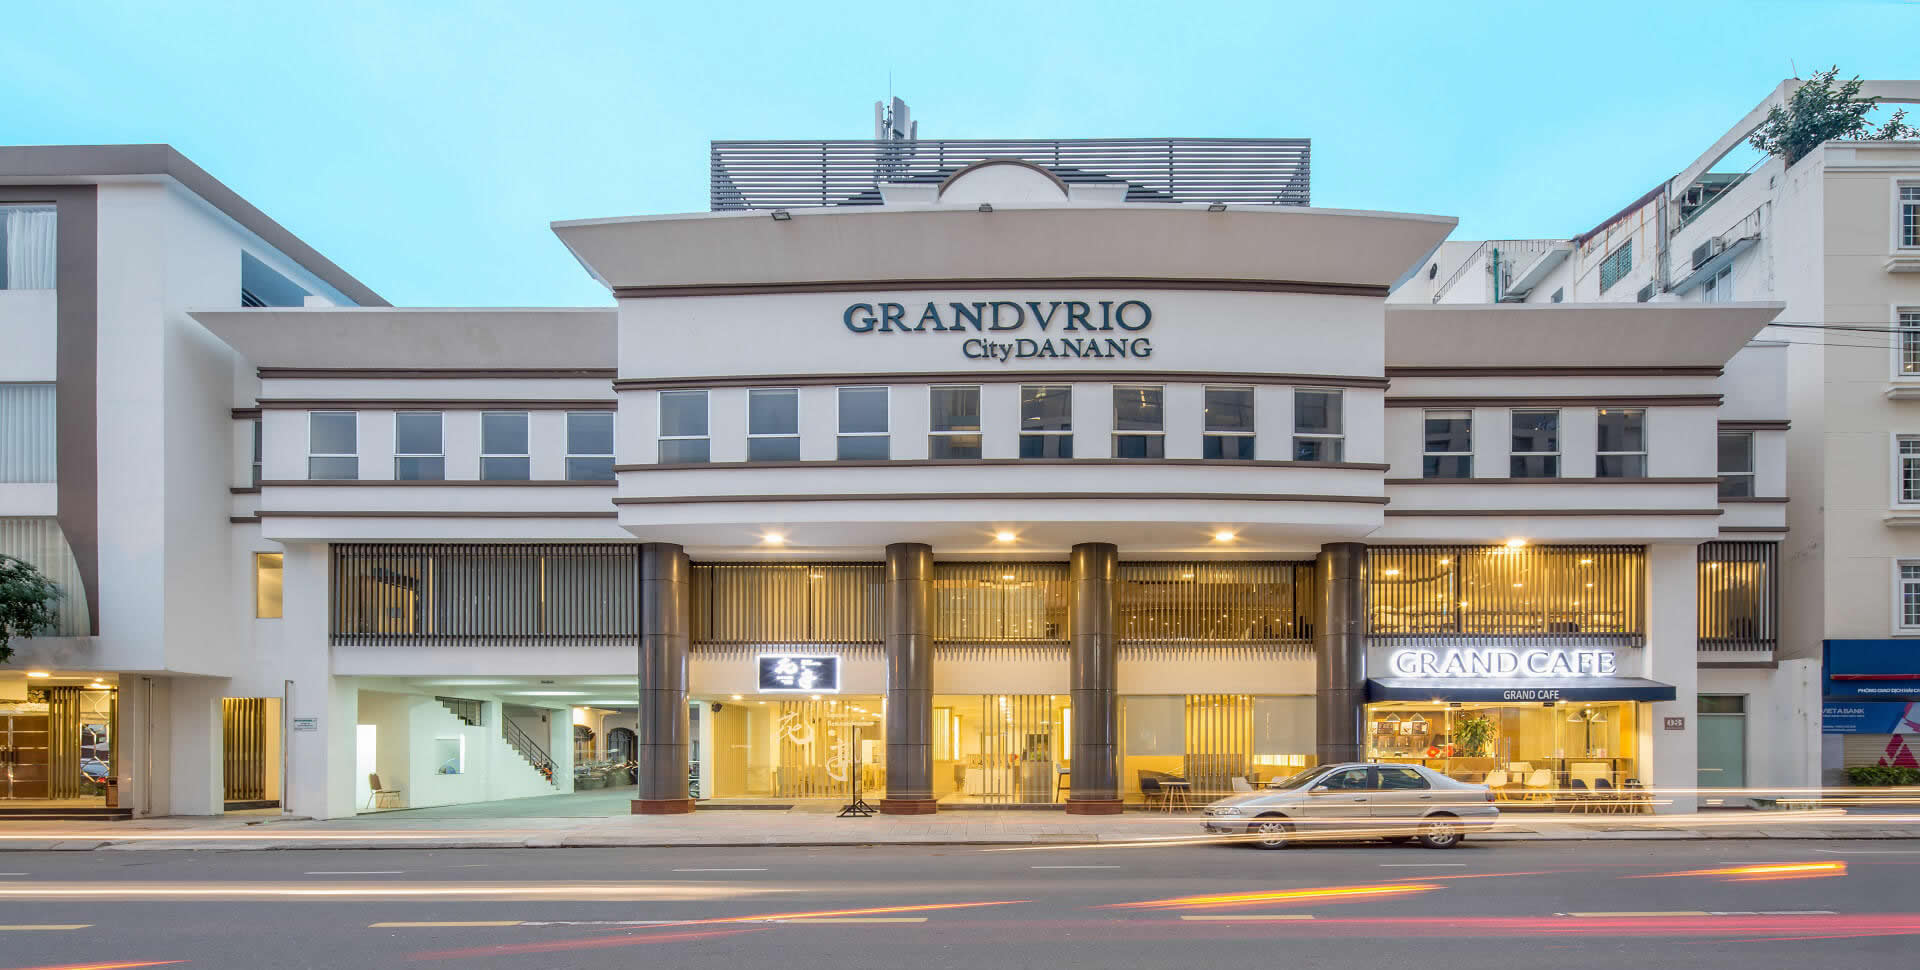 GRANDVRIO City DANANG – Official Website